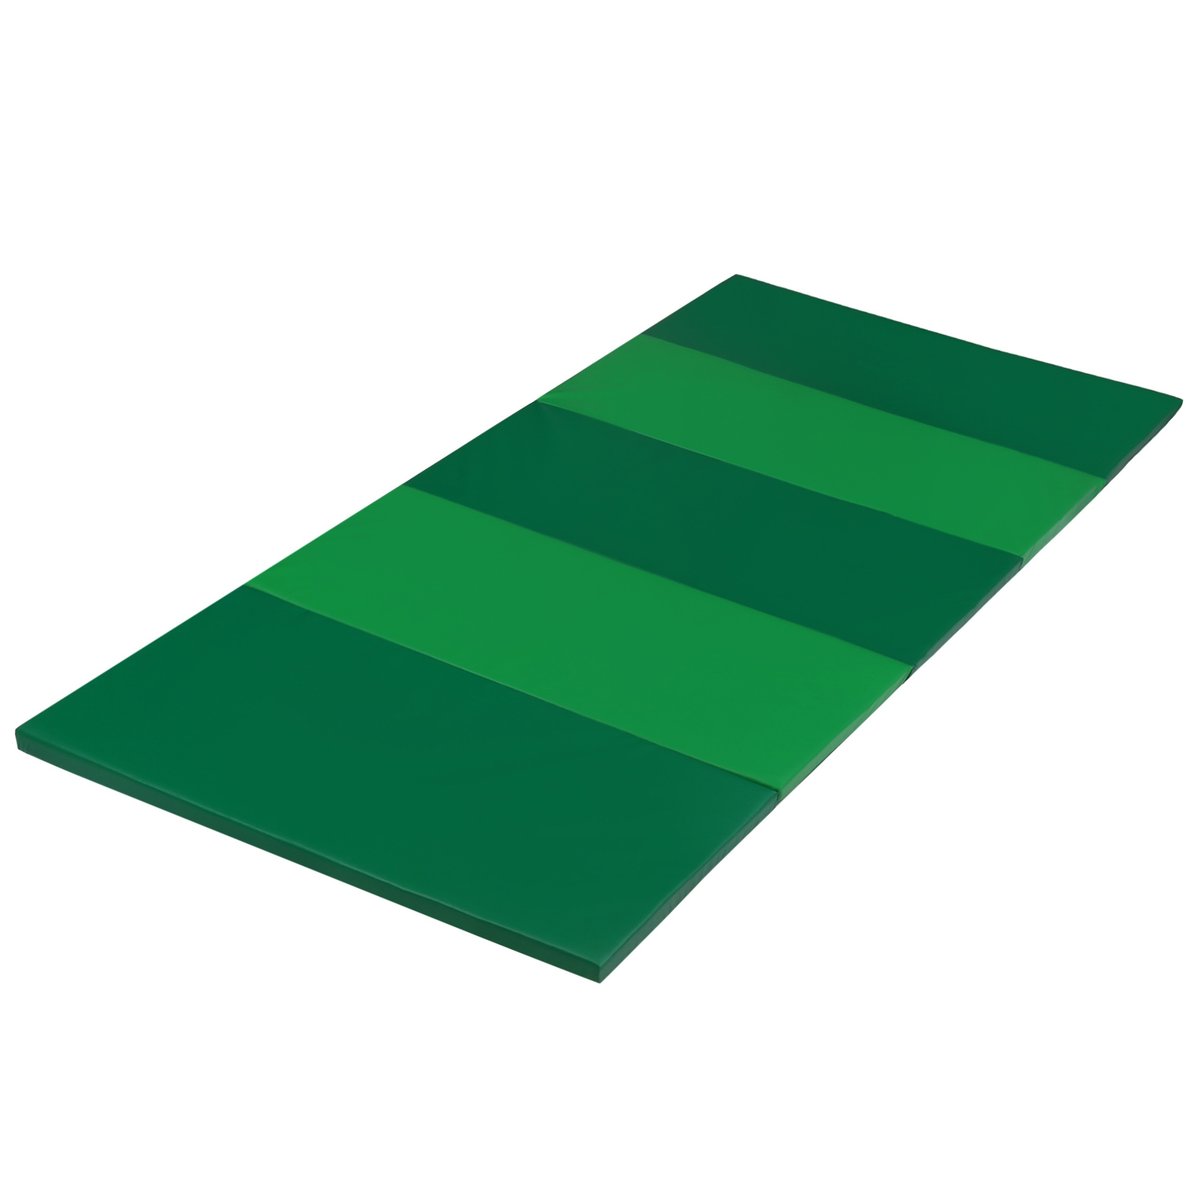 PLUFSIG Składana, zielona mata gimnastyczna, 78x185 cm IKEA Uniwersalny